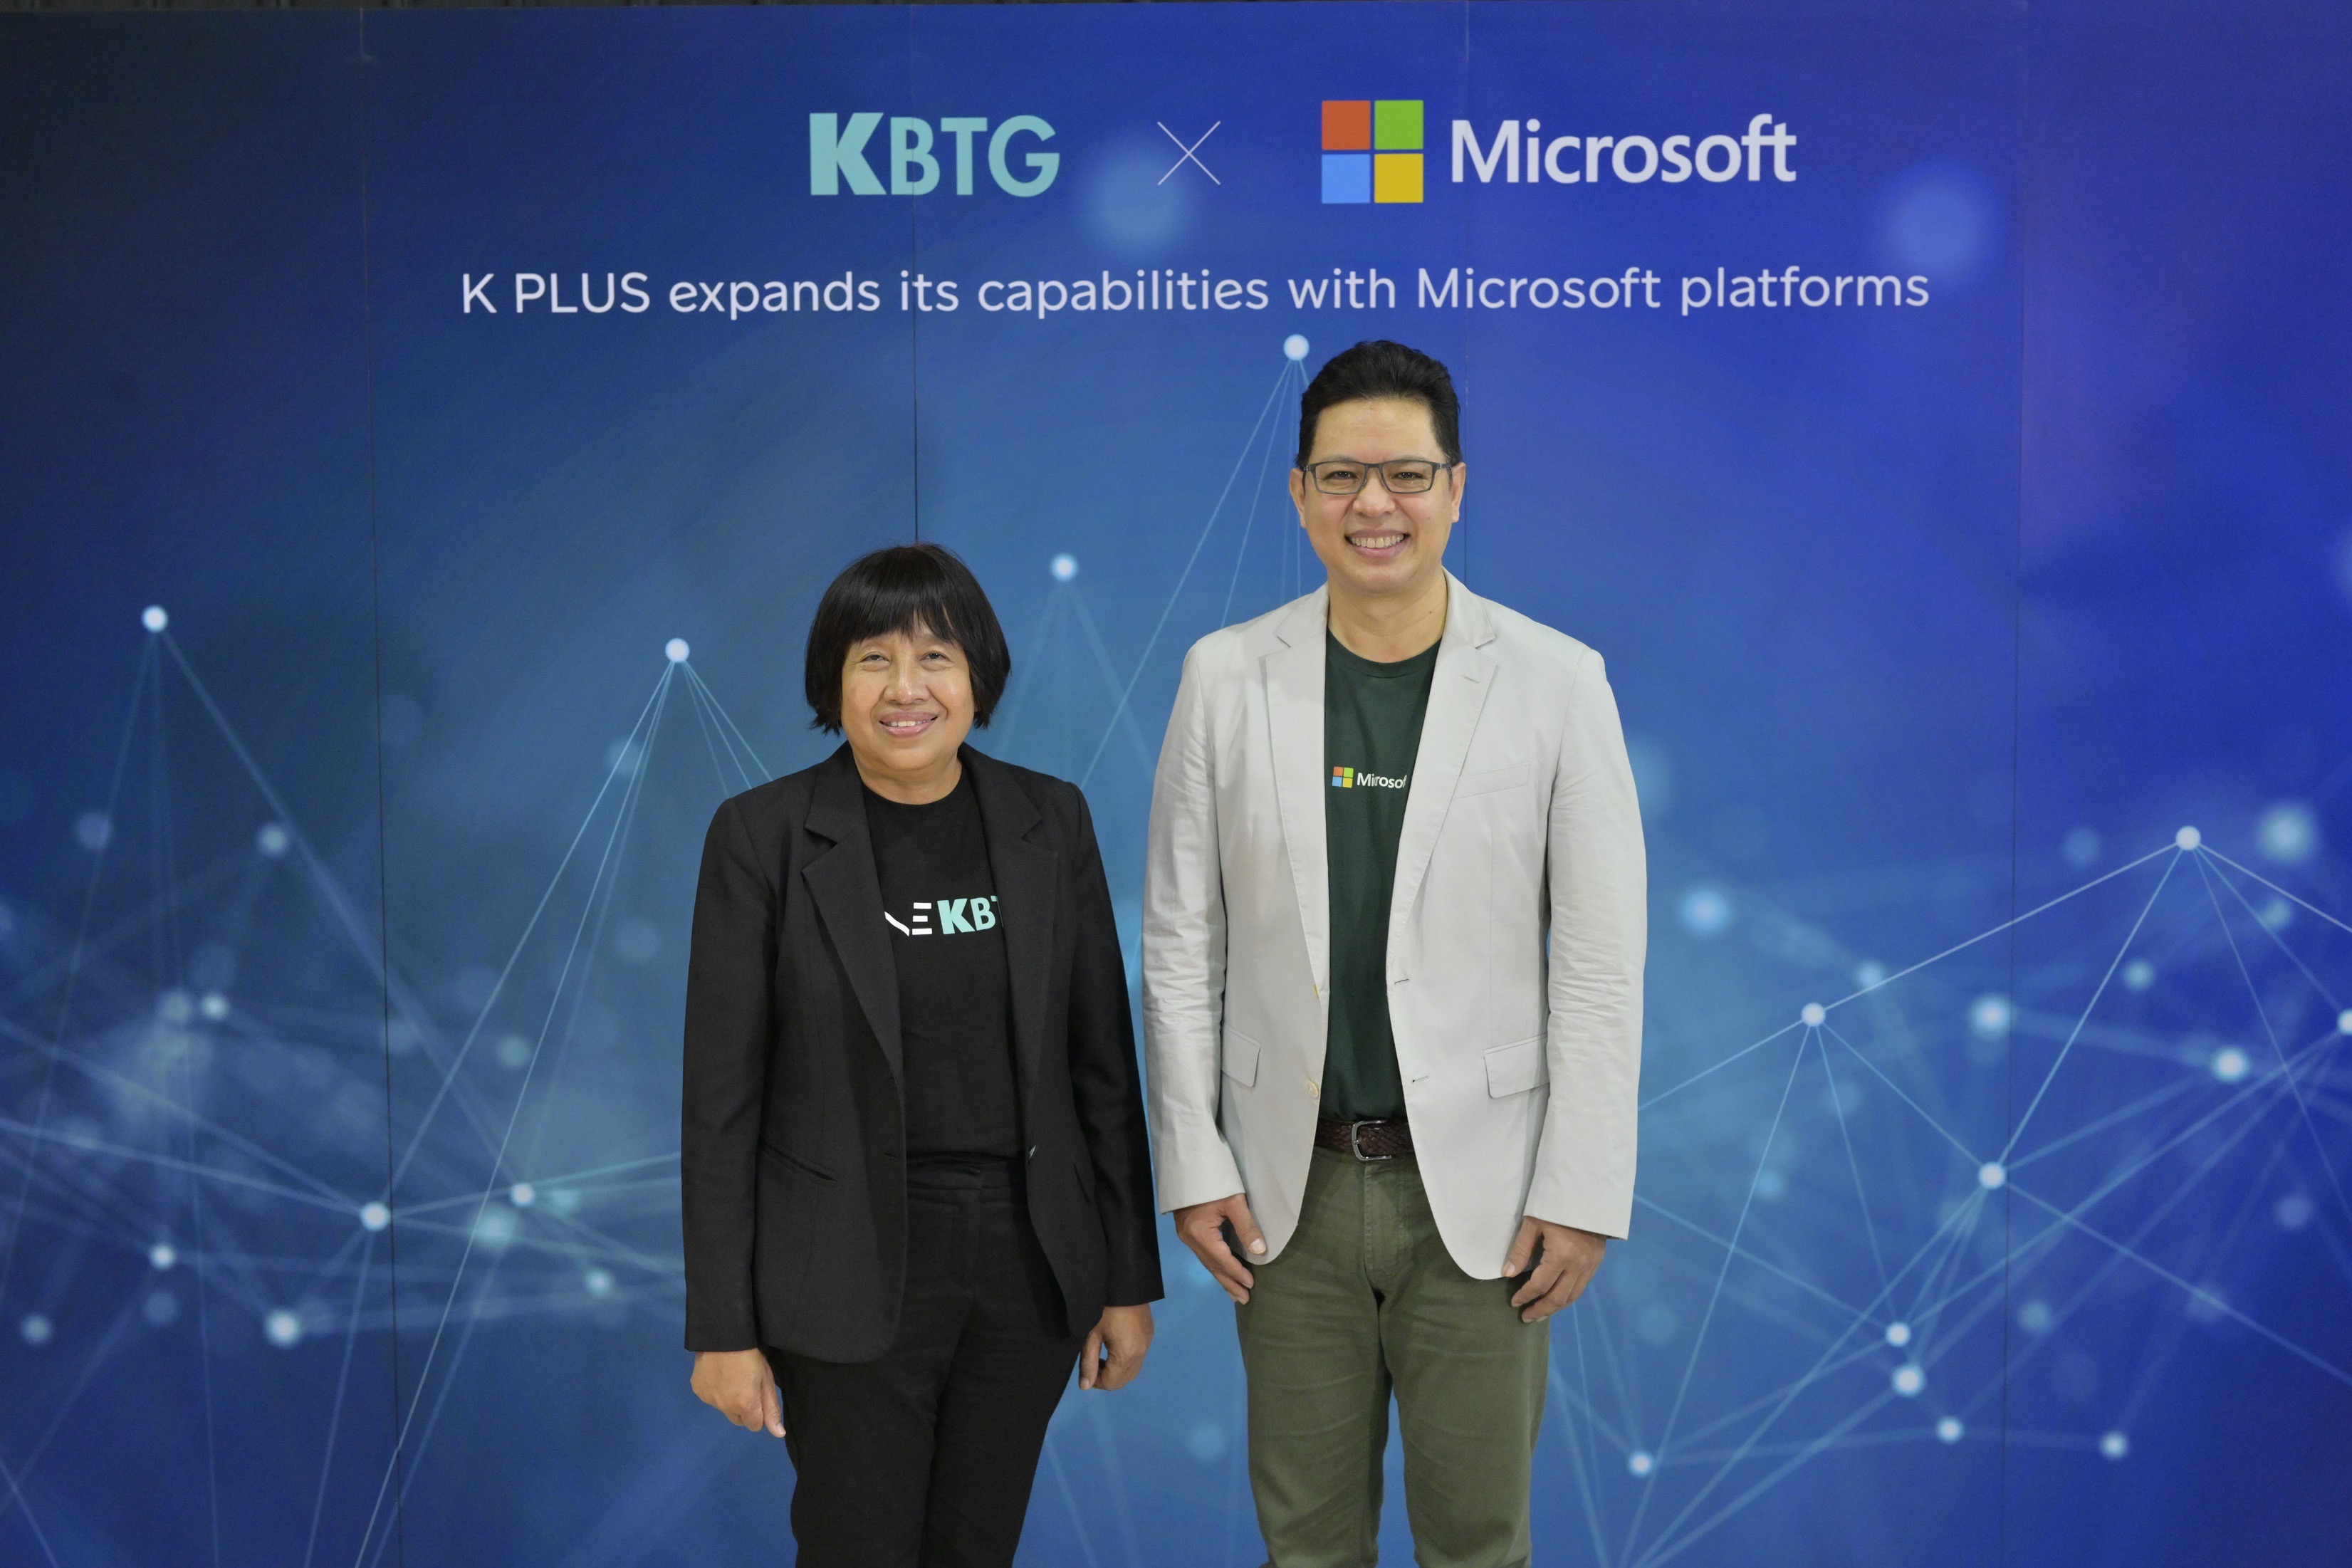 KBTG ผนึก Microsoft ยกระดับการให้บริการ K PLUS สู่ระดับภูมิภาค AEC+3